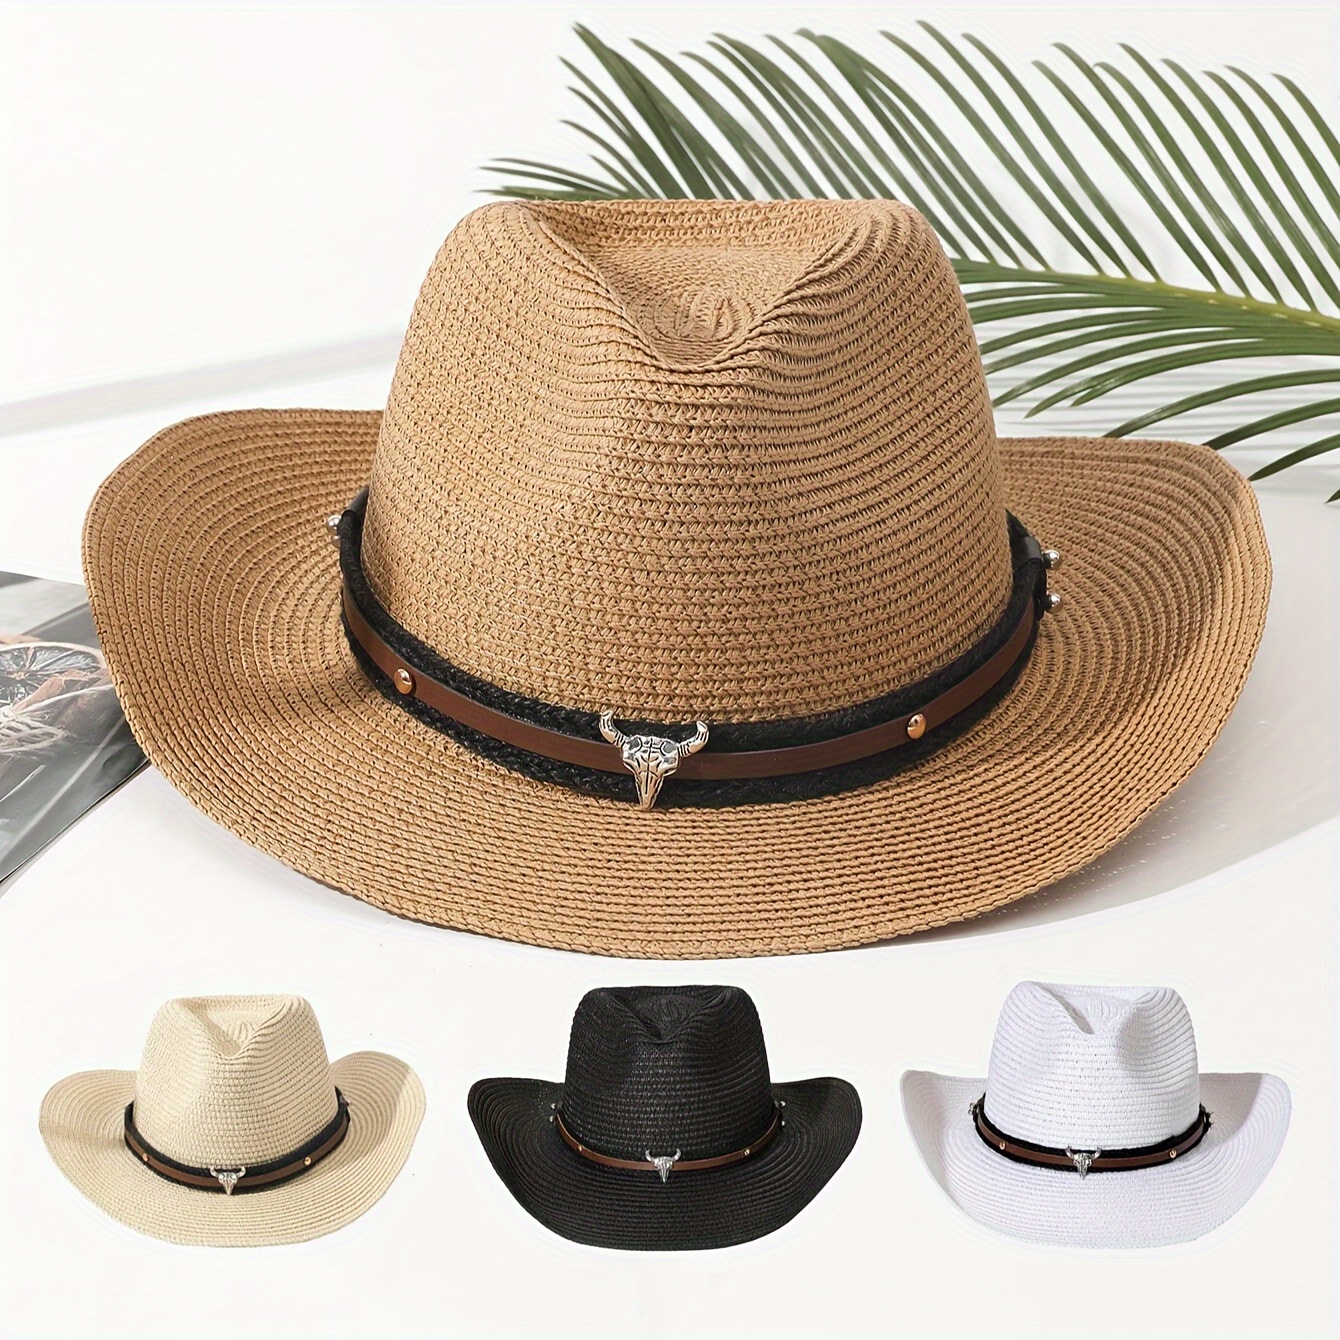 Sombreros PaRa Hombre Mujer DE Proteccion Sol Trabajo Verano Viaje Playa  CampinG